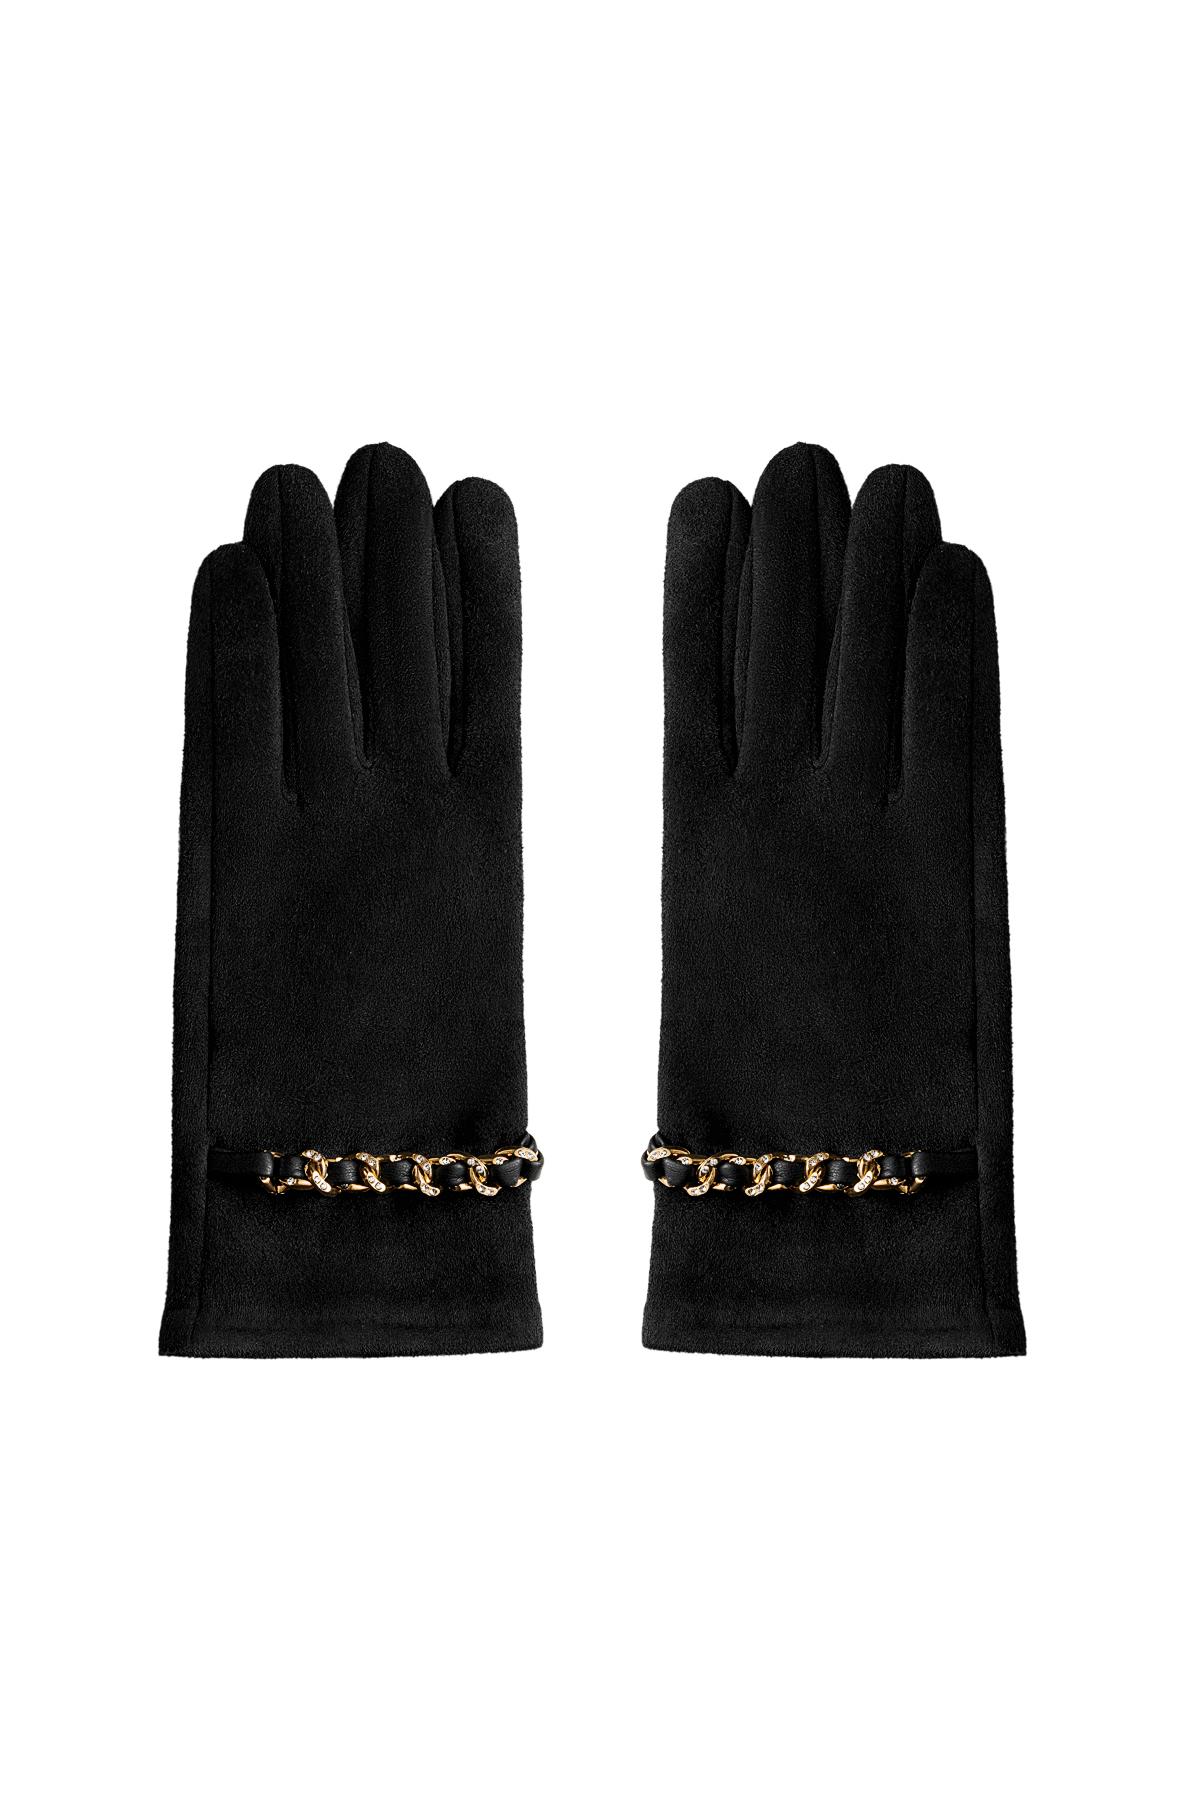 Altın ve zirkon detaylı eldivenler Black Polyester One size h5 